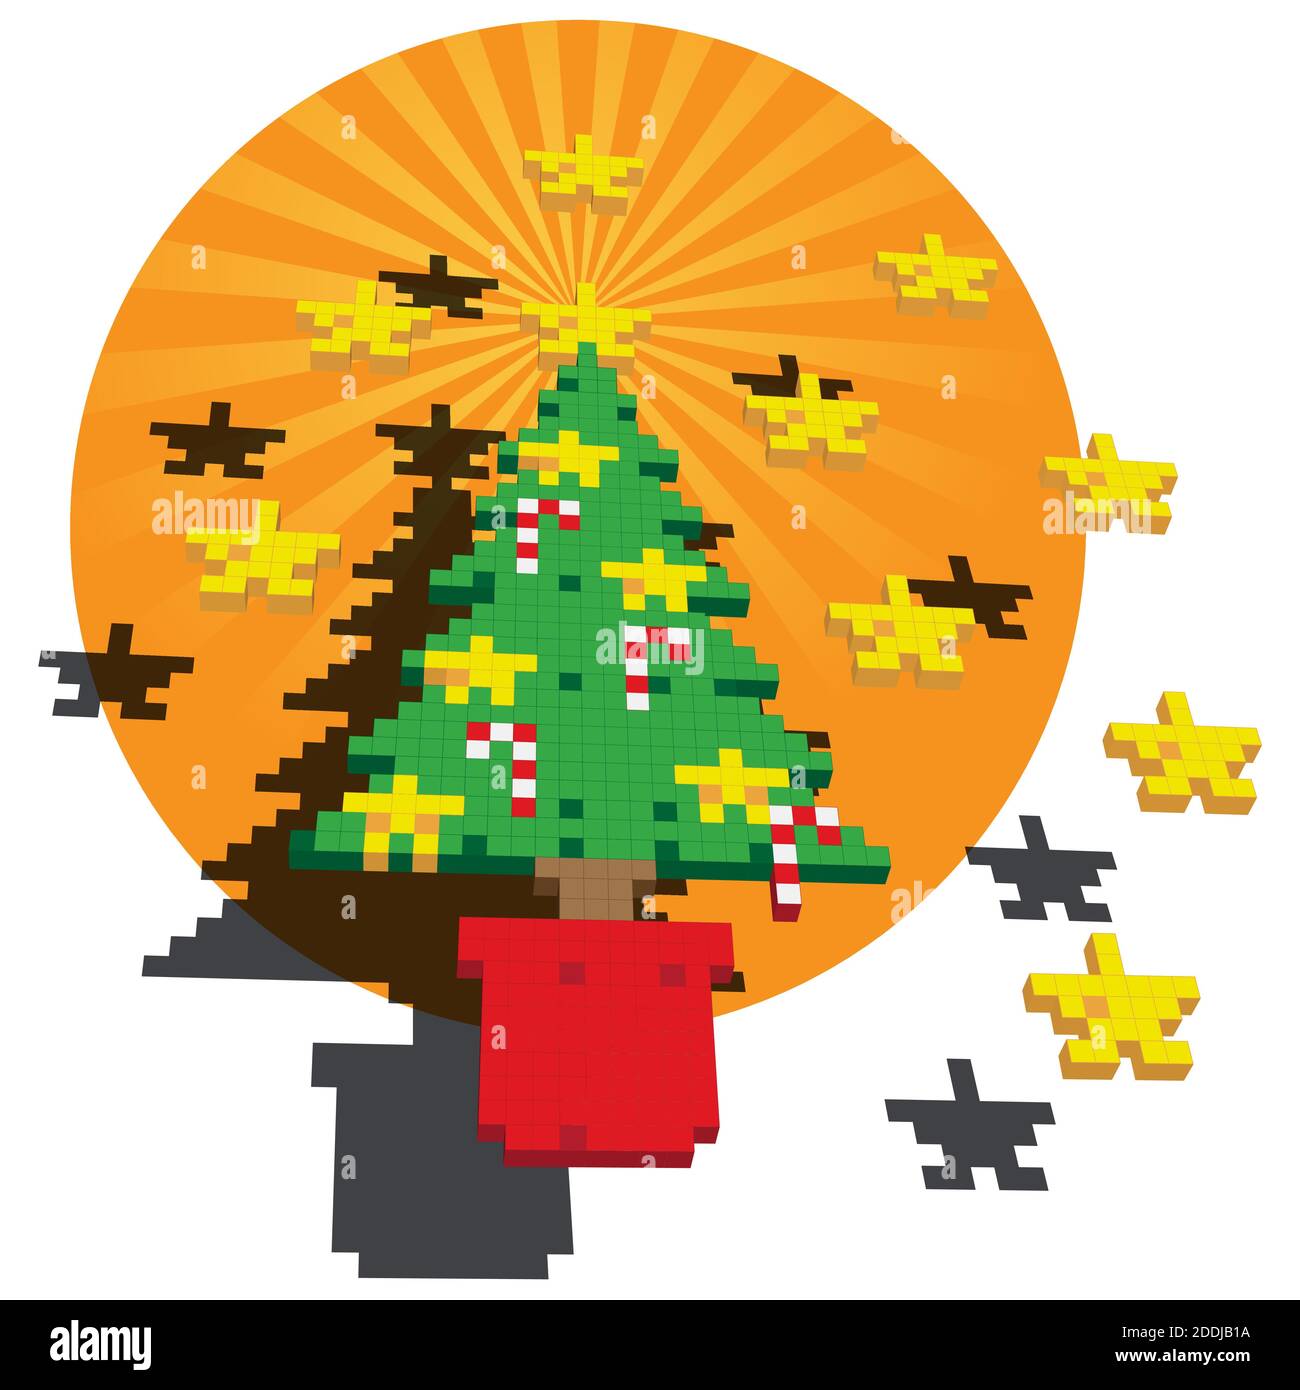 Eine Würfelpixel-Illustration eines Weihnachtsbaums mit Sternen und Candy Canes vor einem orangefarbenen kreisförmigen Hintergrund. Stock Vektor